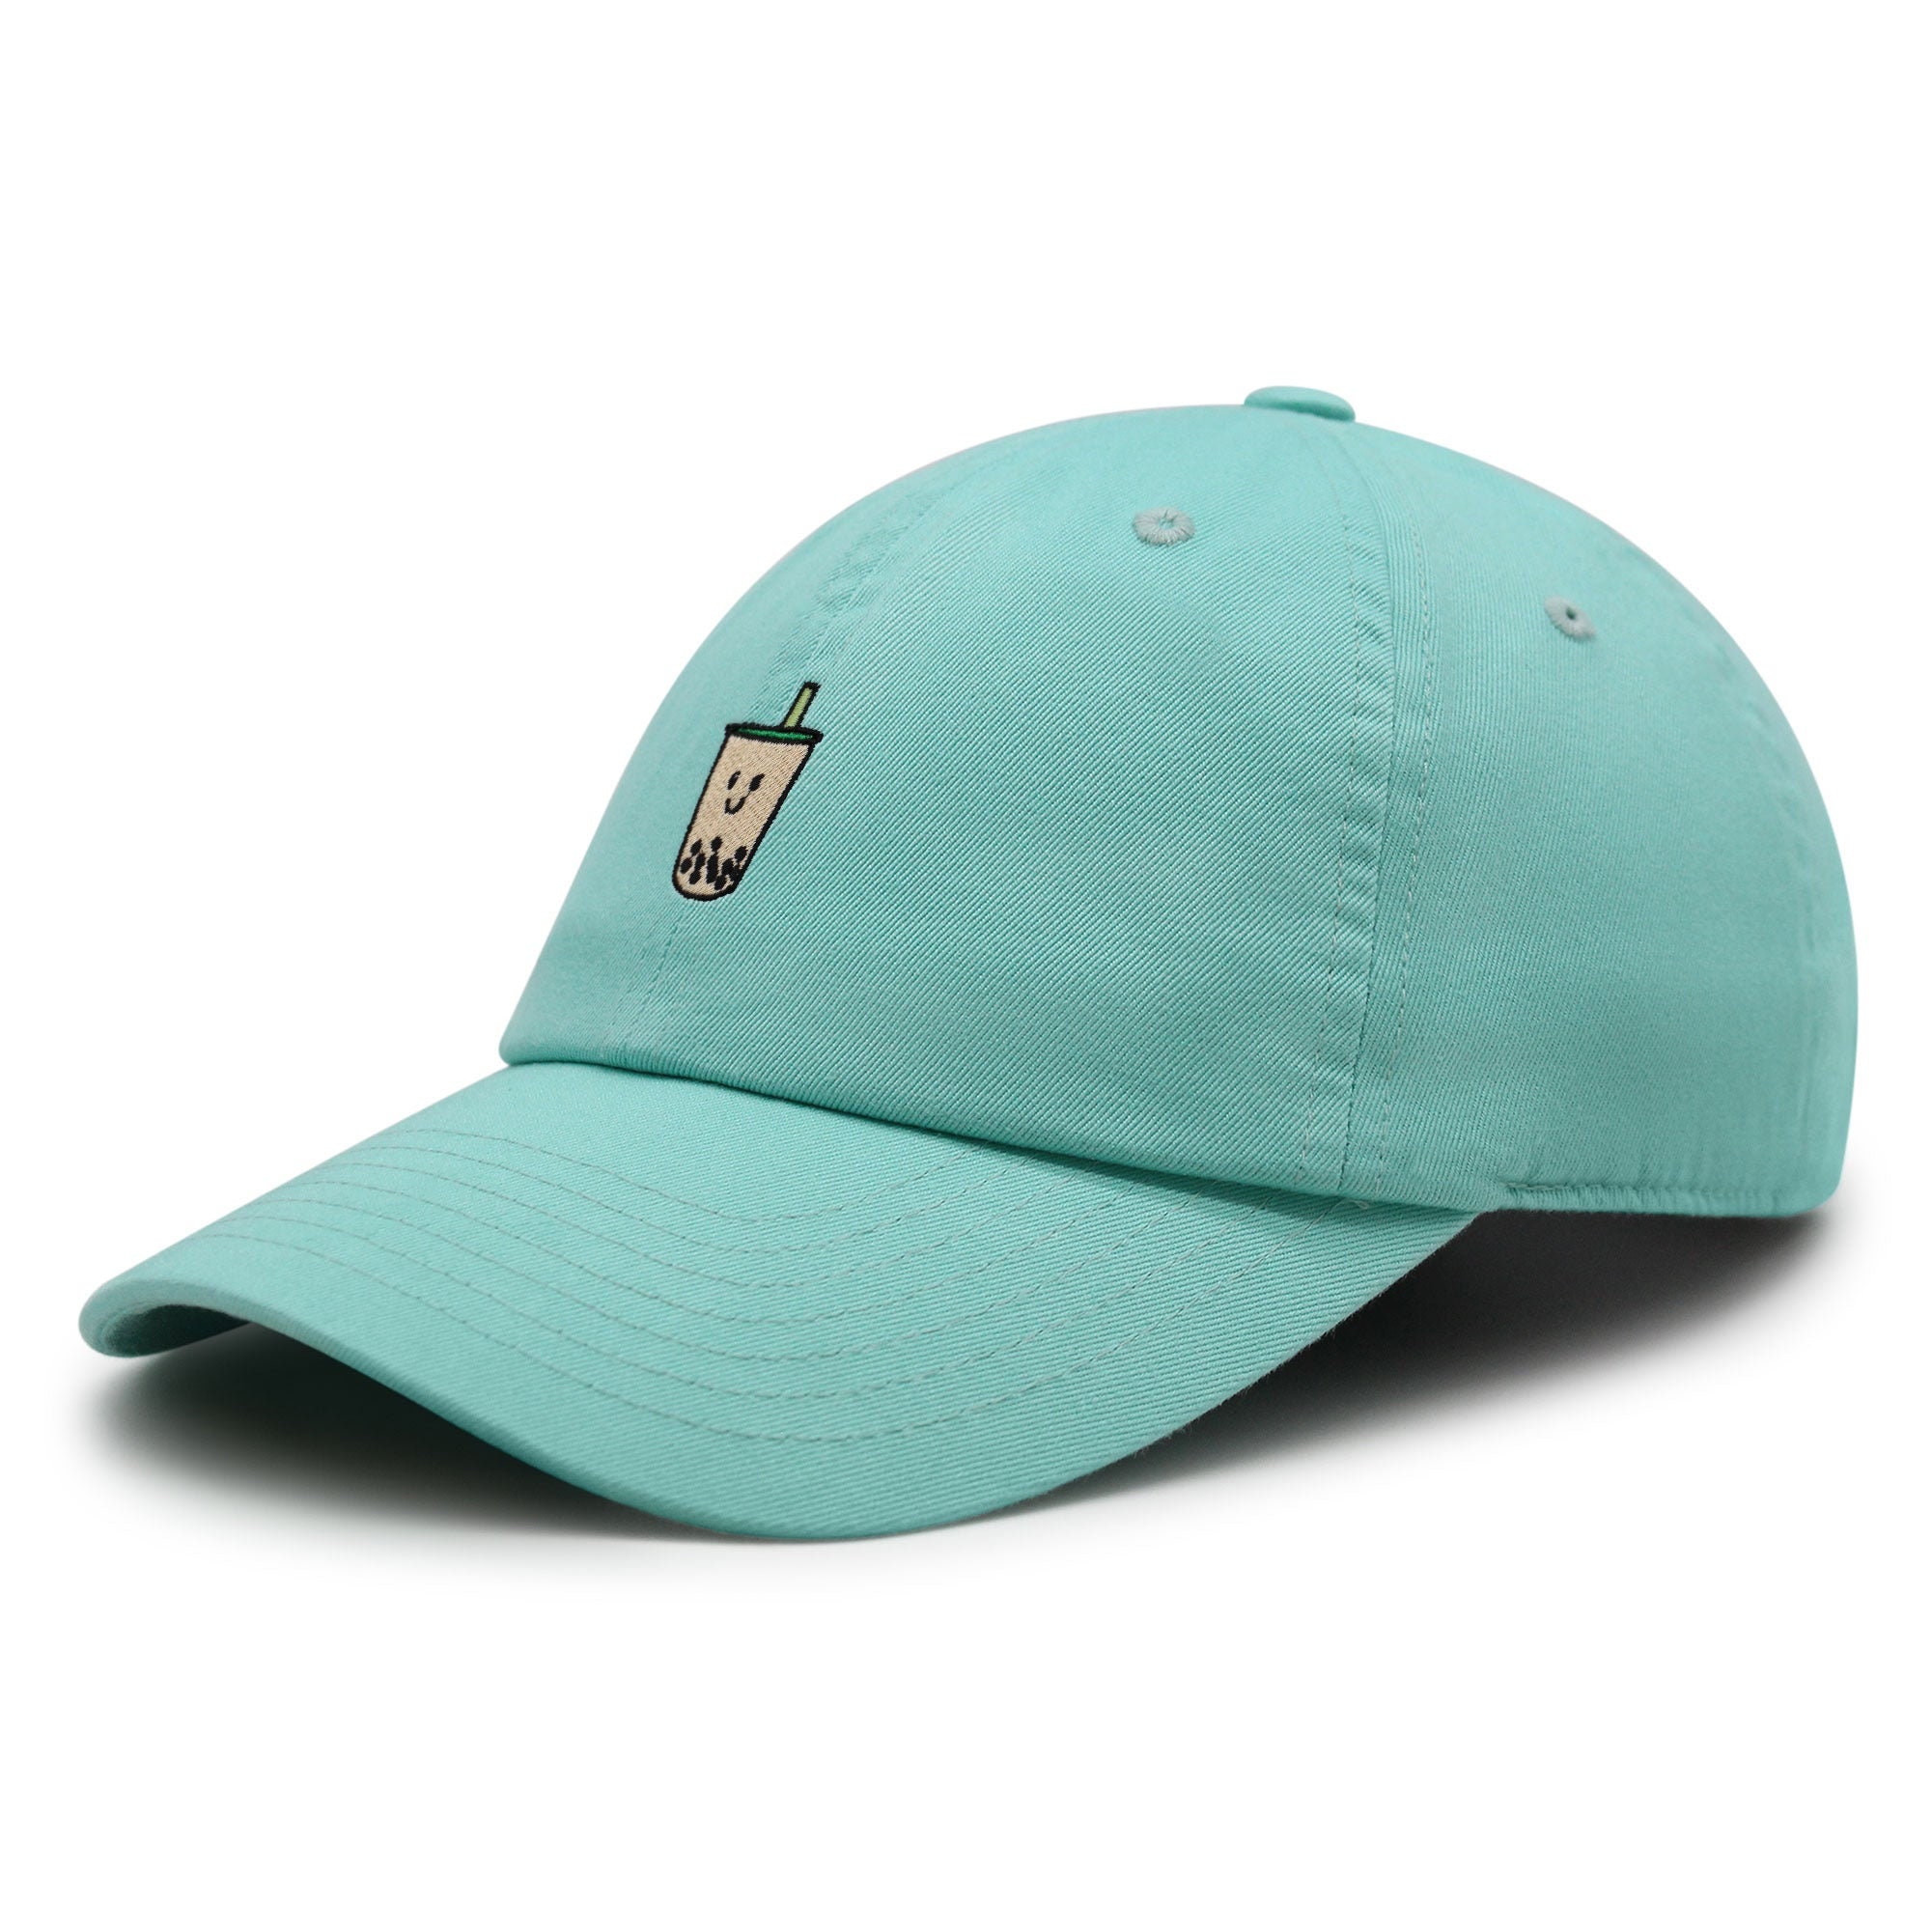 Boba Tea  Premium Dad Hat Embroidered Baseball Cap Pearl